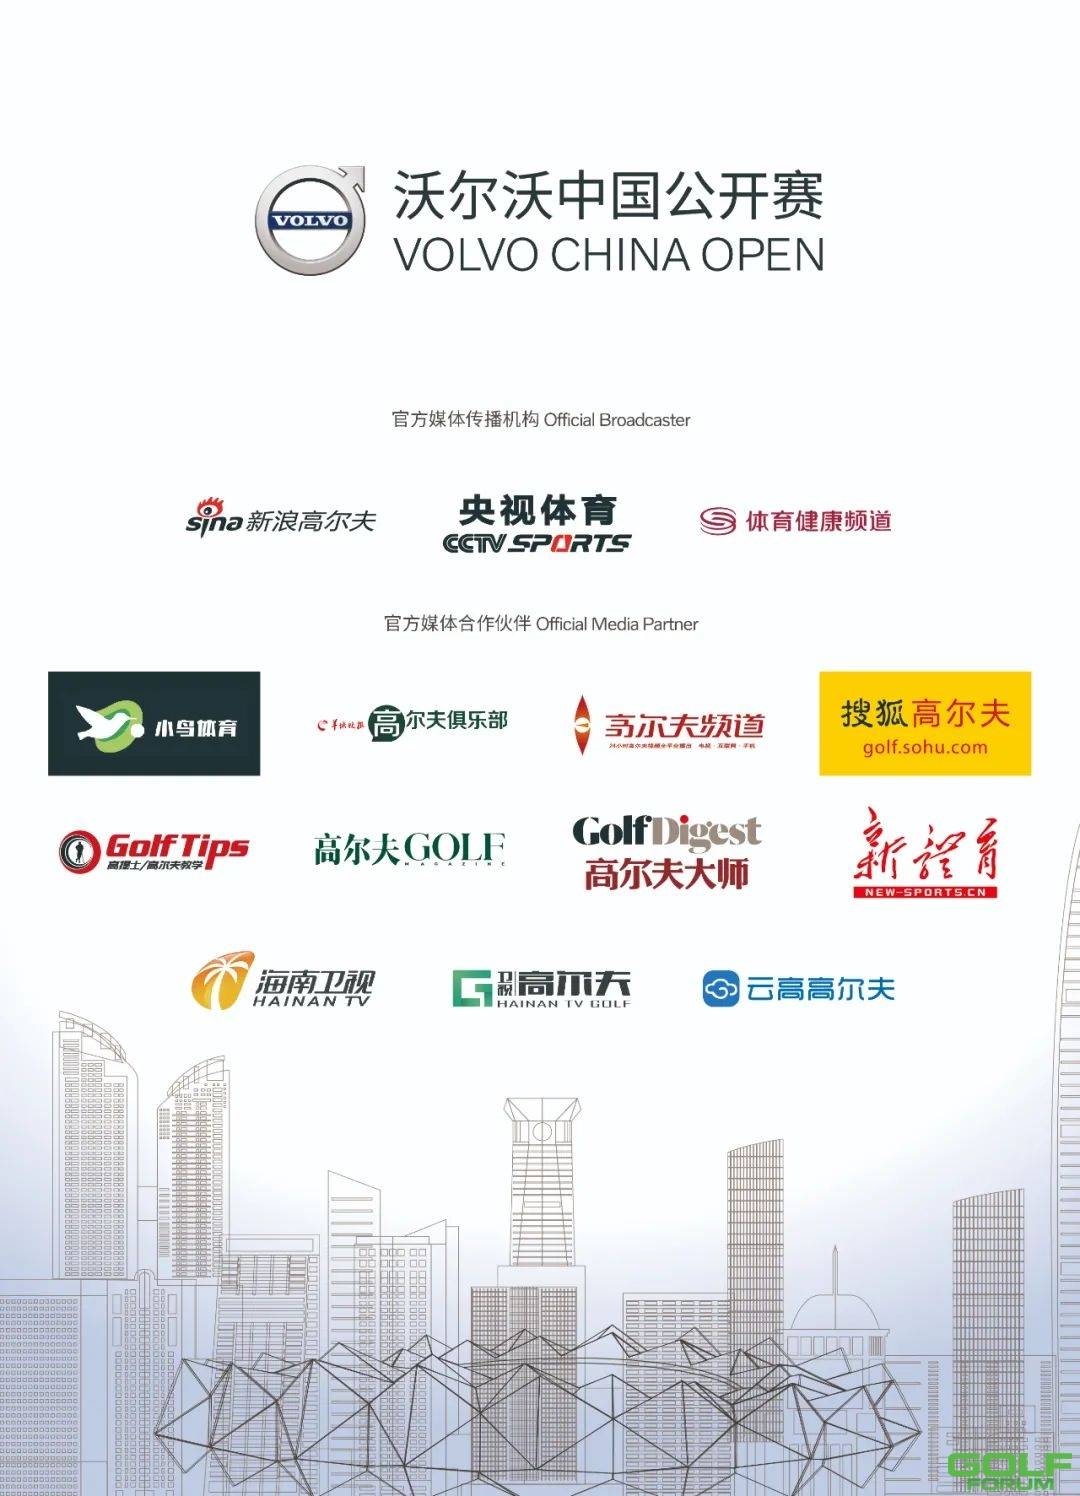 传承与接力第26届沃尔沃中国公开赛盛大开启